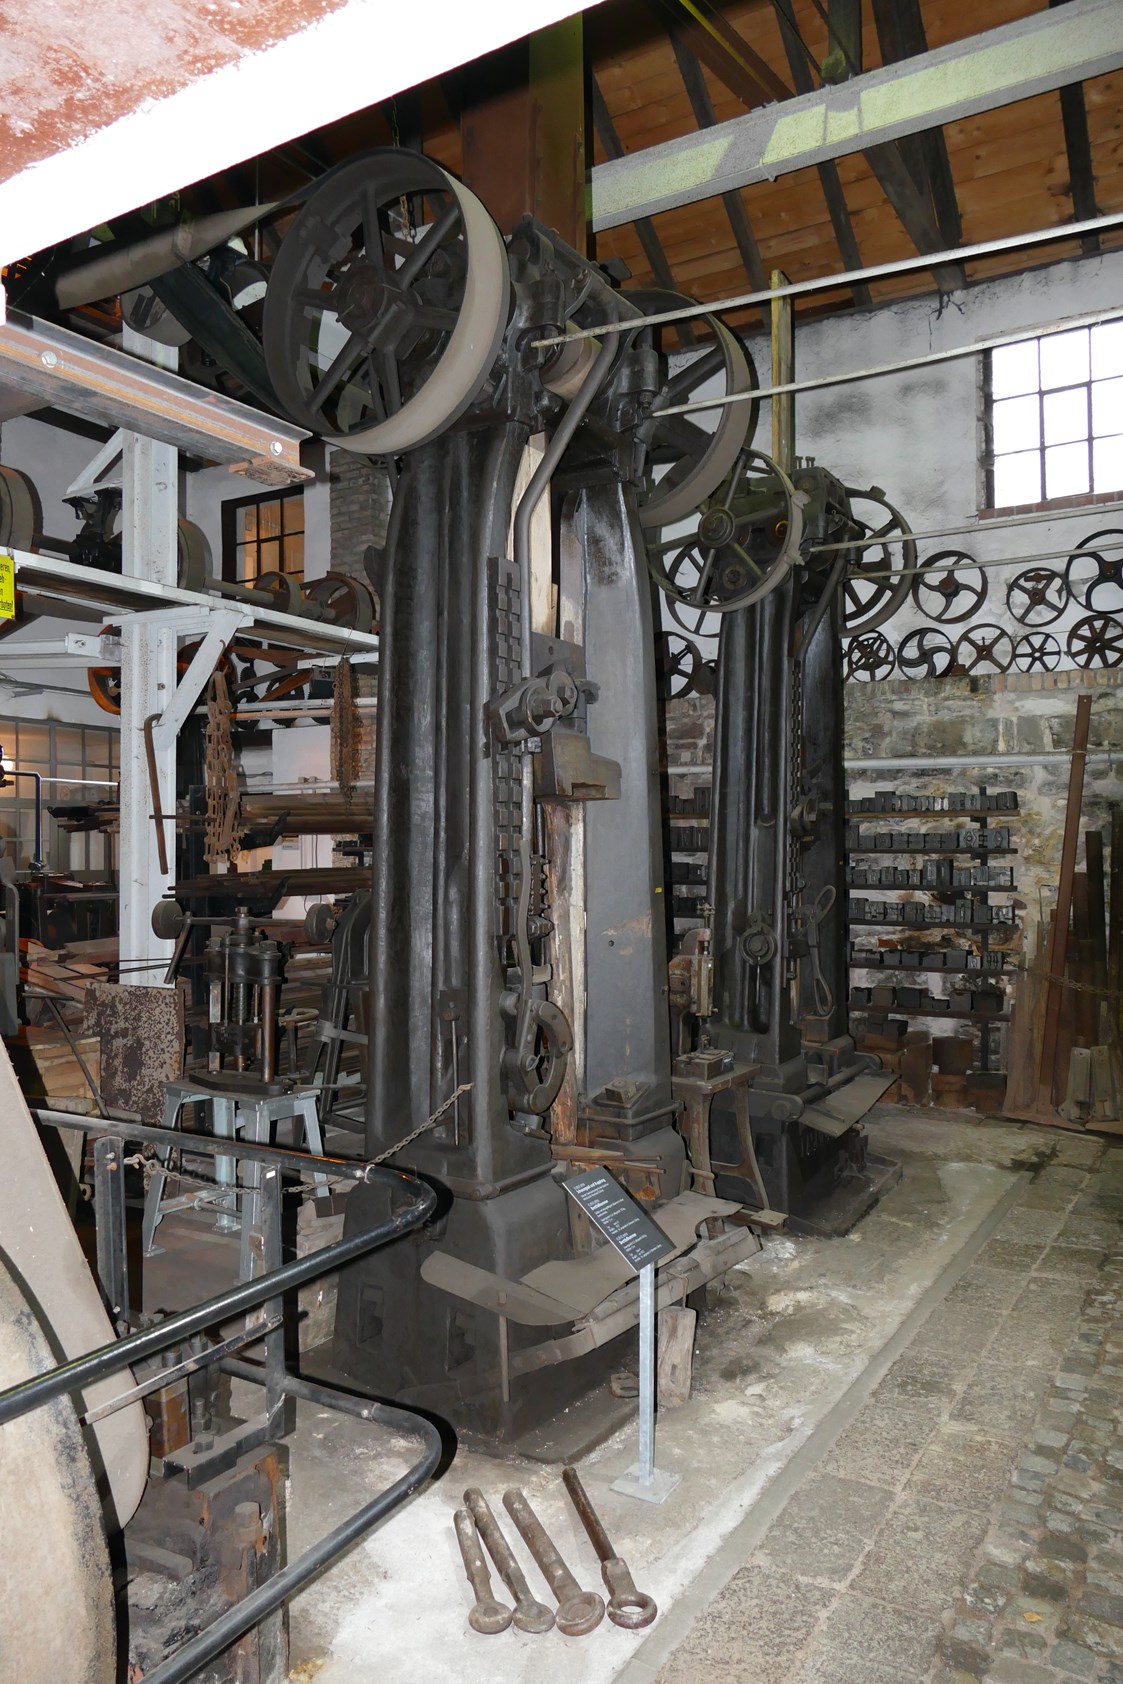 Ausflugsziel: Unser größter Brettfallhammer mit ca. 16 Tonnen Gesamtgewicht - Technisches Museum Gesenkschmiede